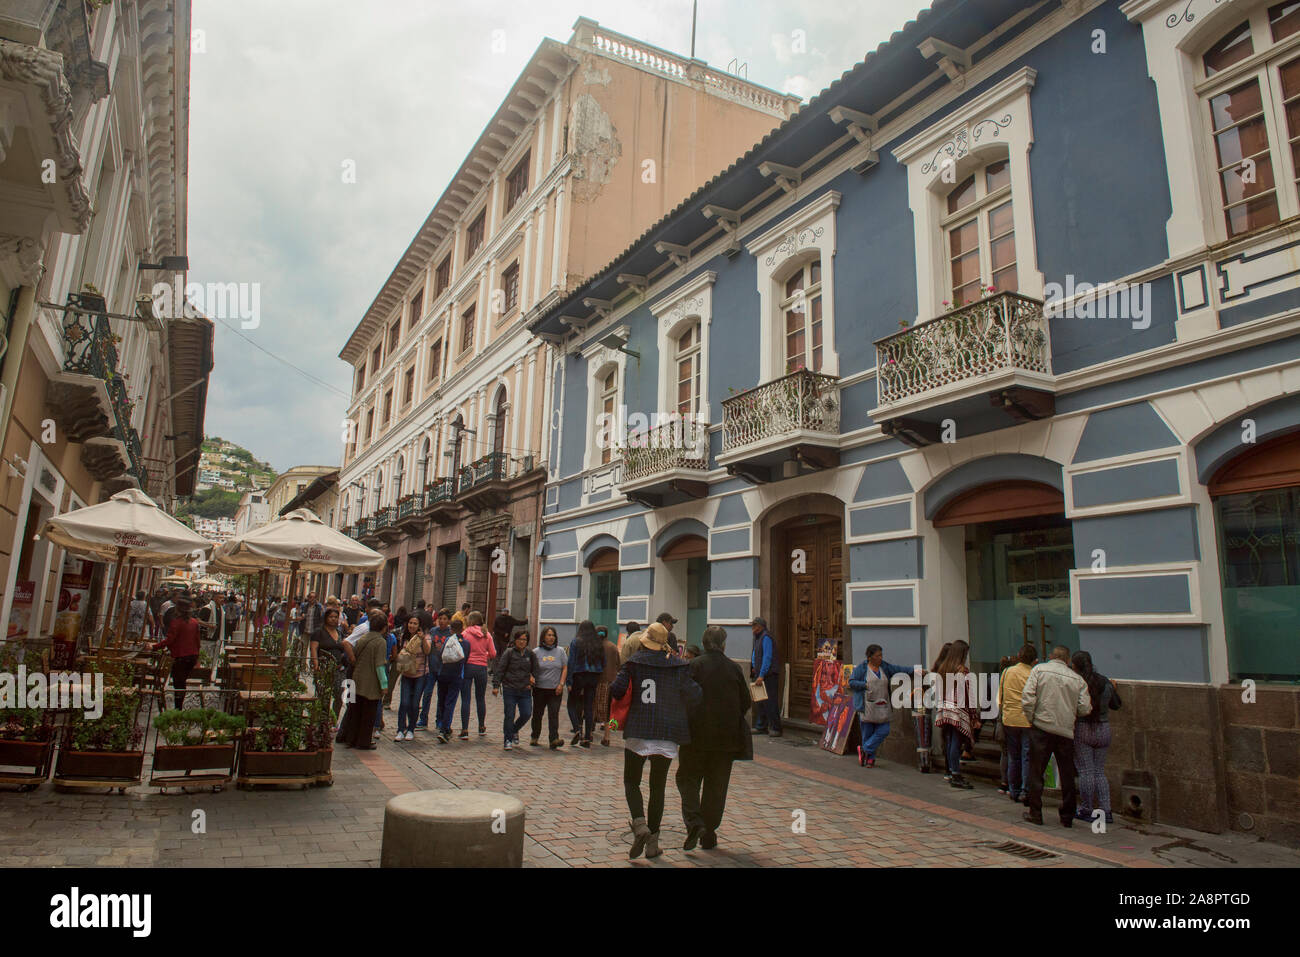 L'architecture coloniale dans la vieille ville historique de Quito, Équateur Banque D'Images